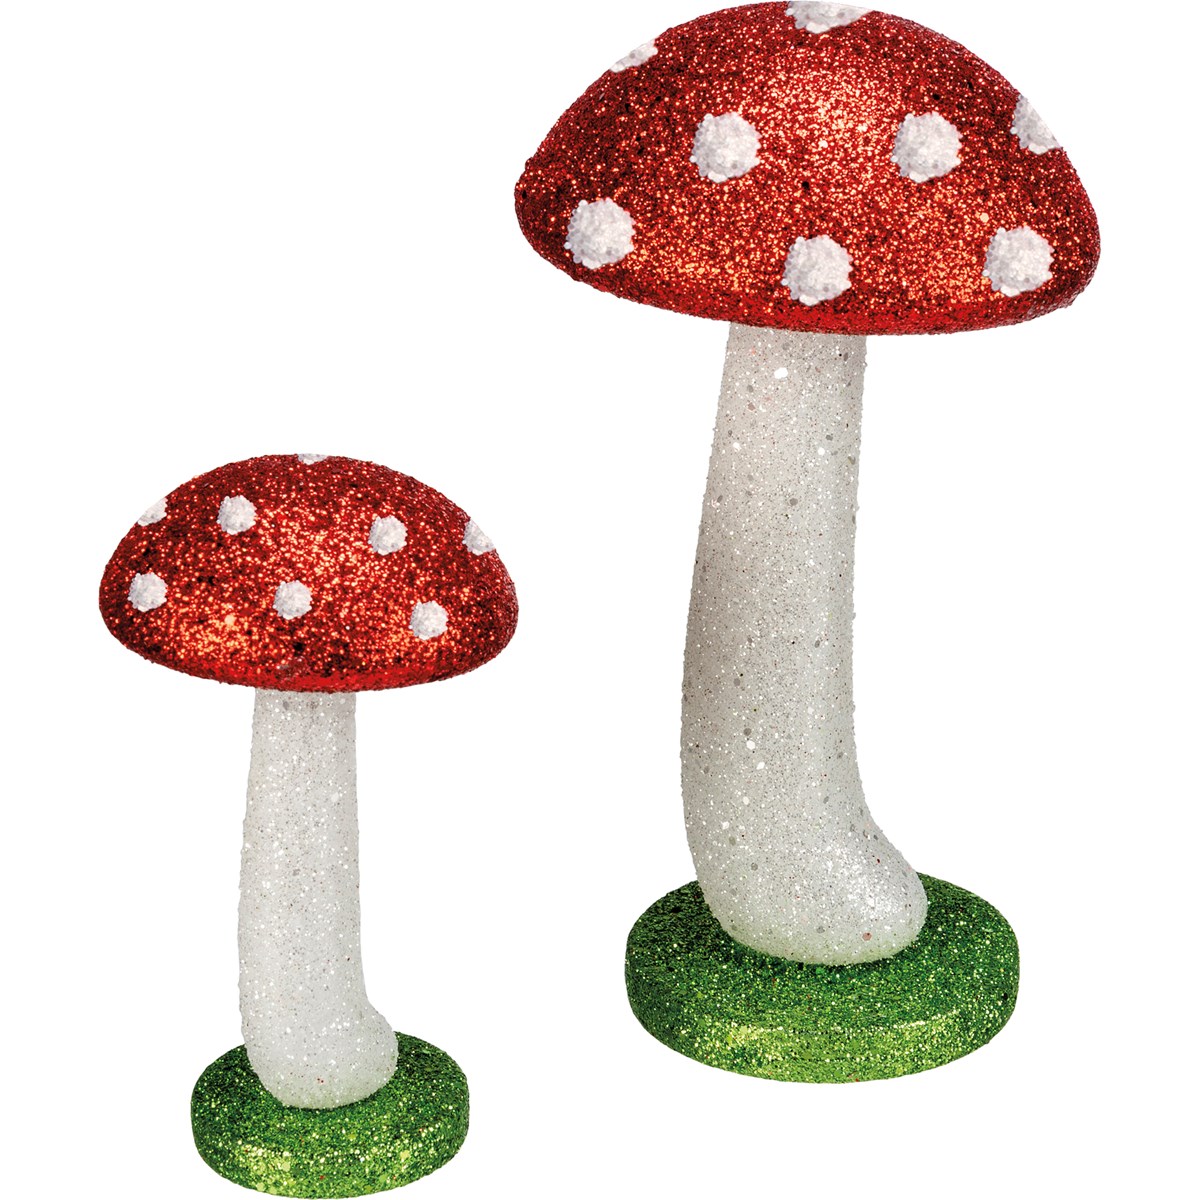 Mushroom Figurine Set - Plastic, Glitter